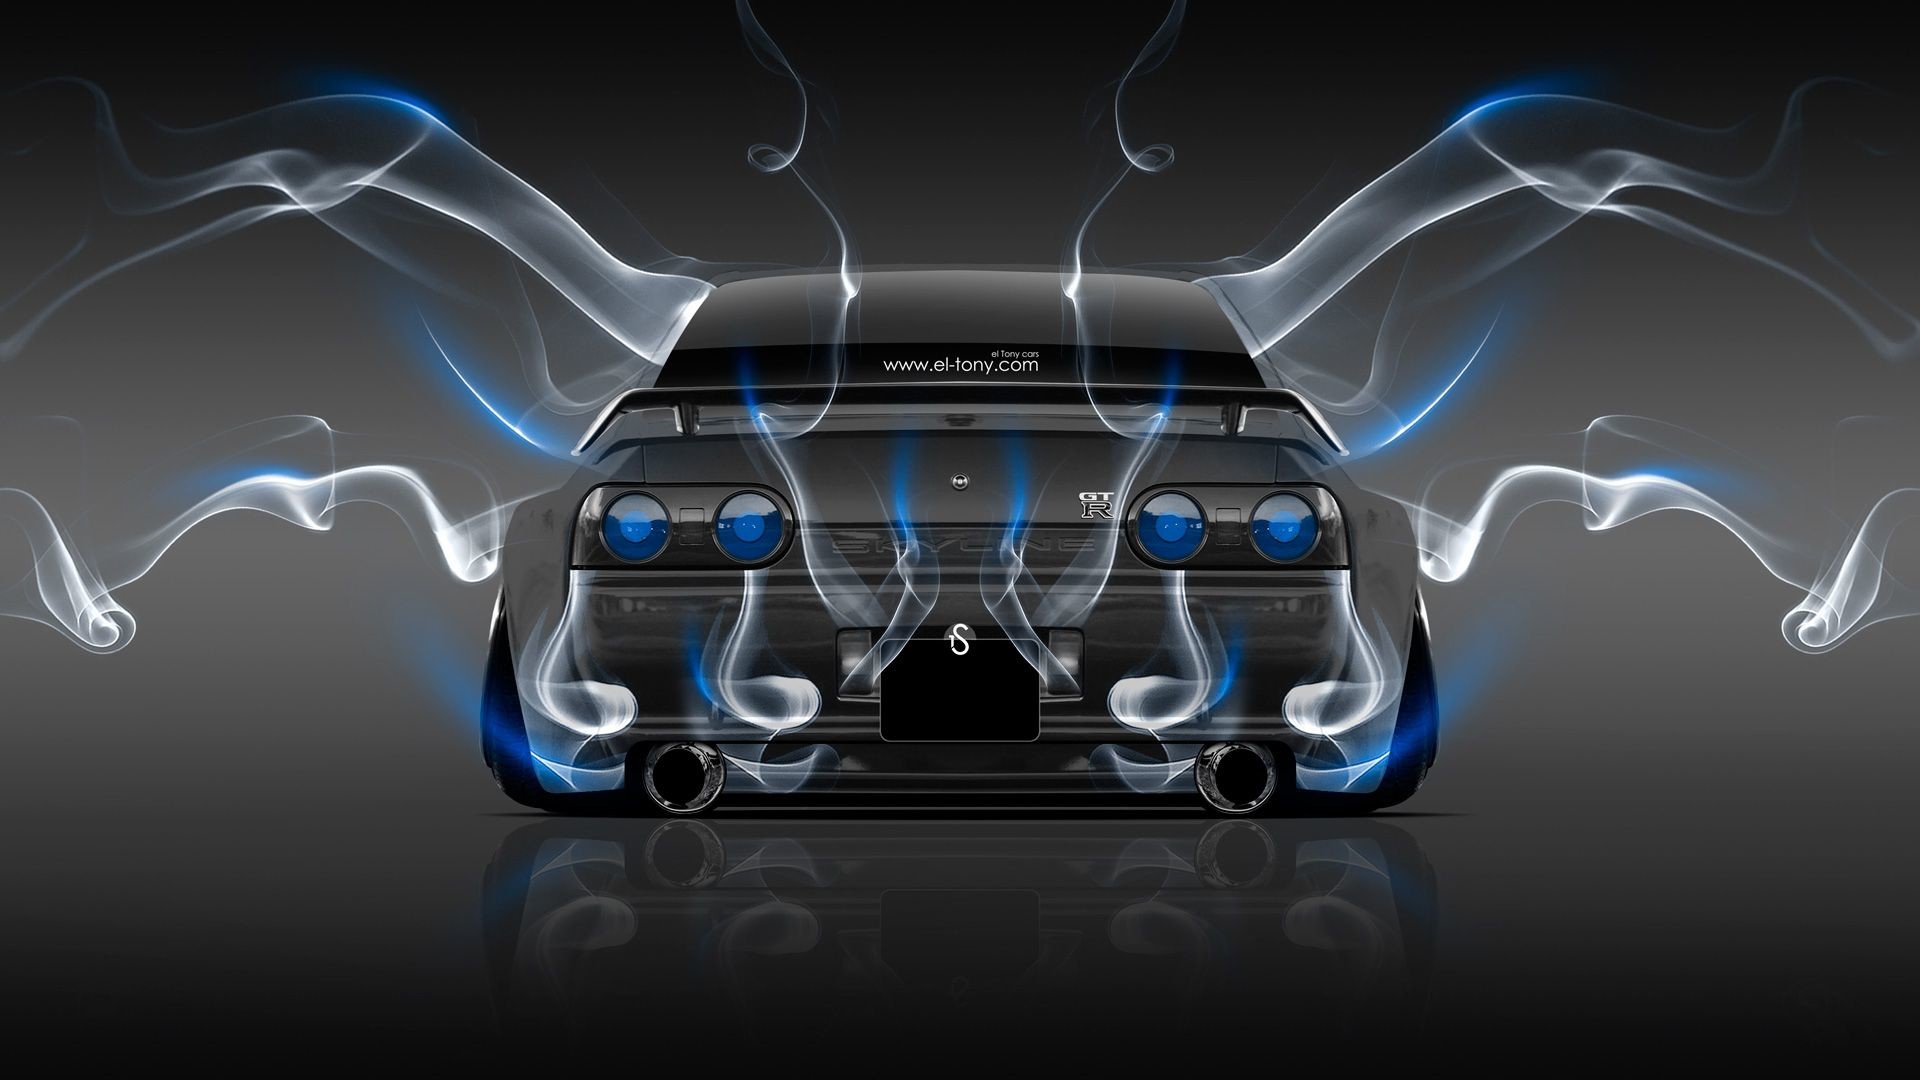 Nissan Skyline GTR R32 Energy Crystal City Car 2014 Â« el Tony